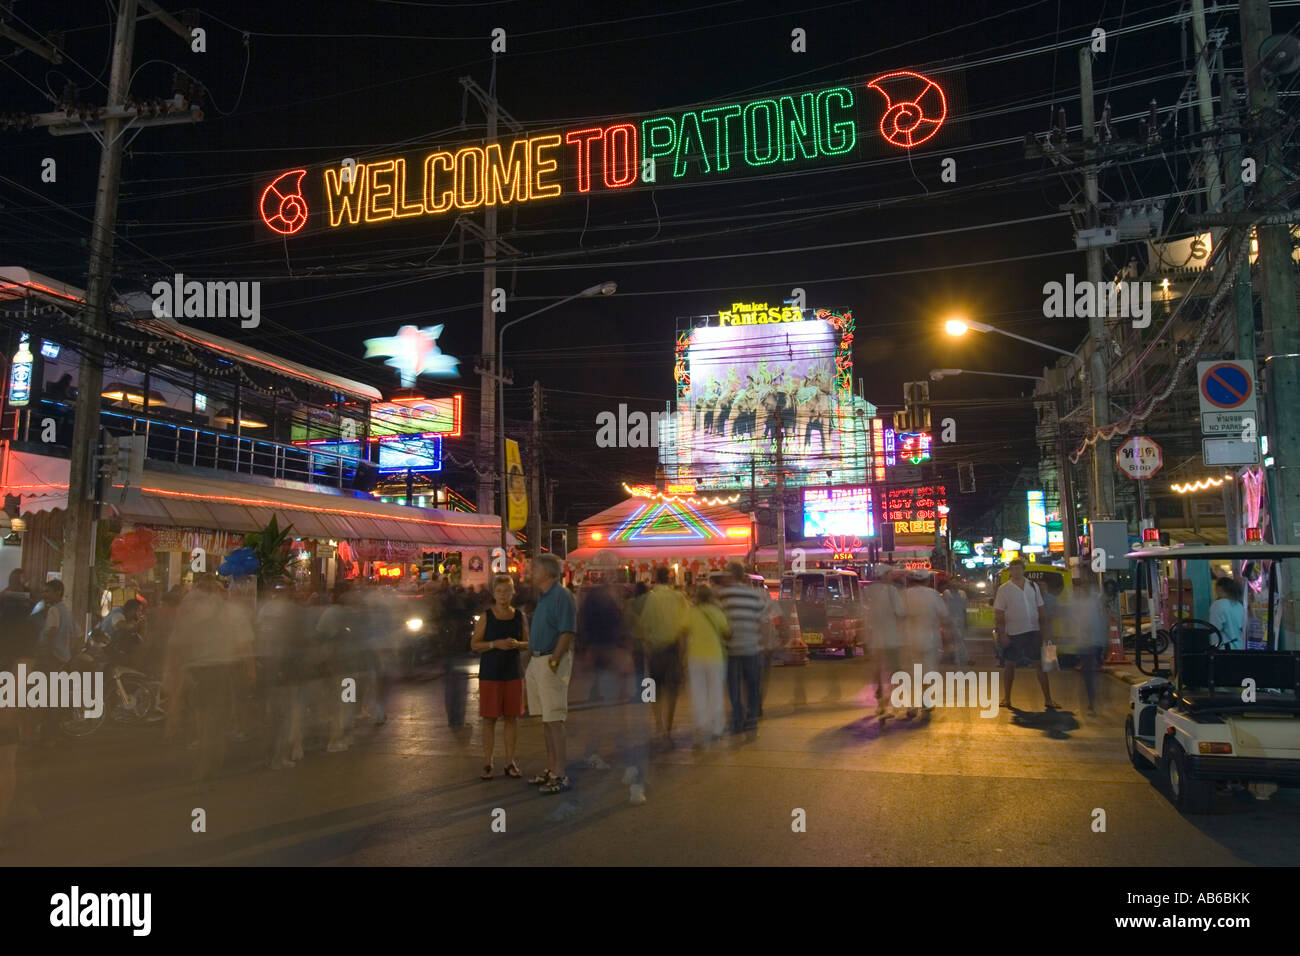 Notte tempo per passeggiare orge beach bar negozi Benvenuto a Patong accesa segno della Thailandia Foto Stock